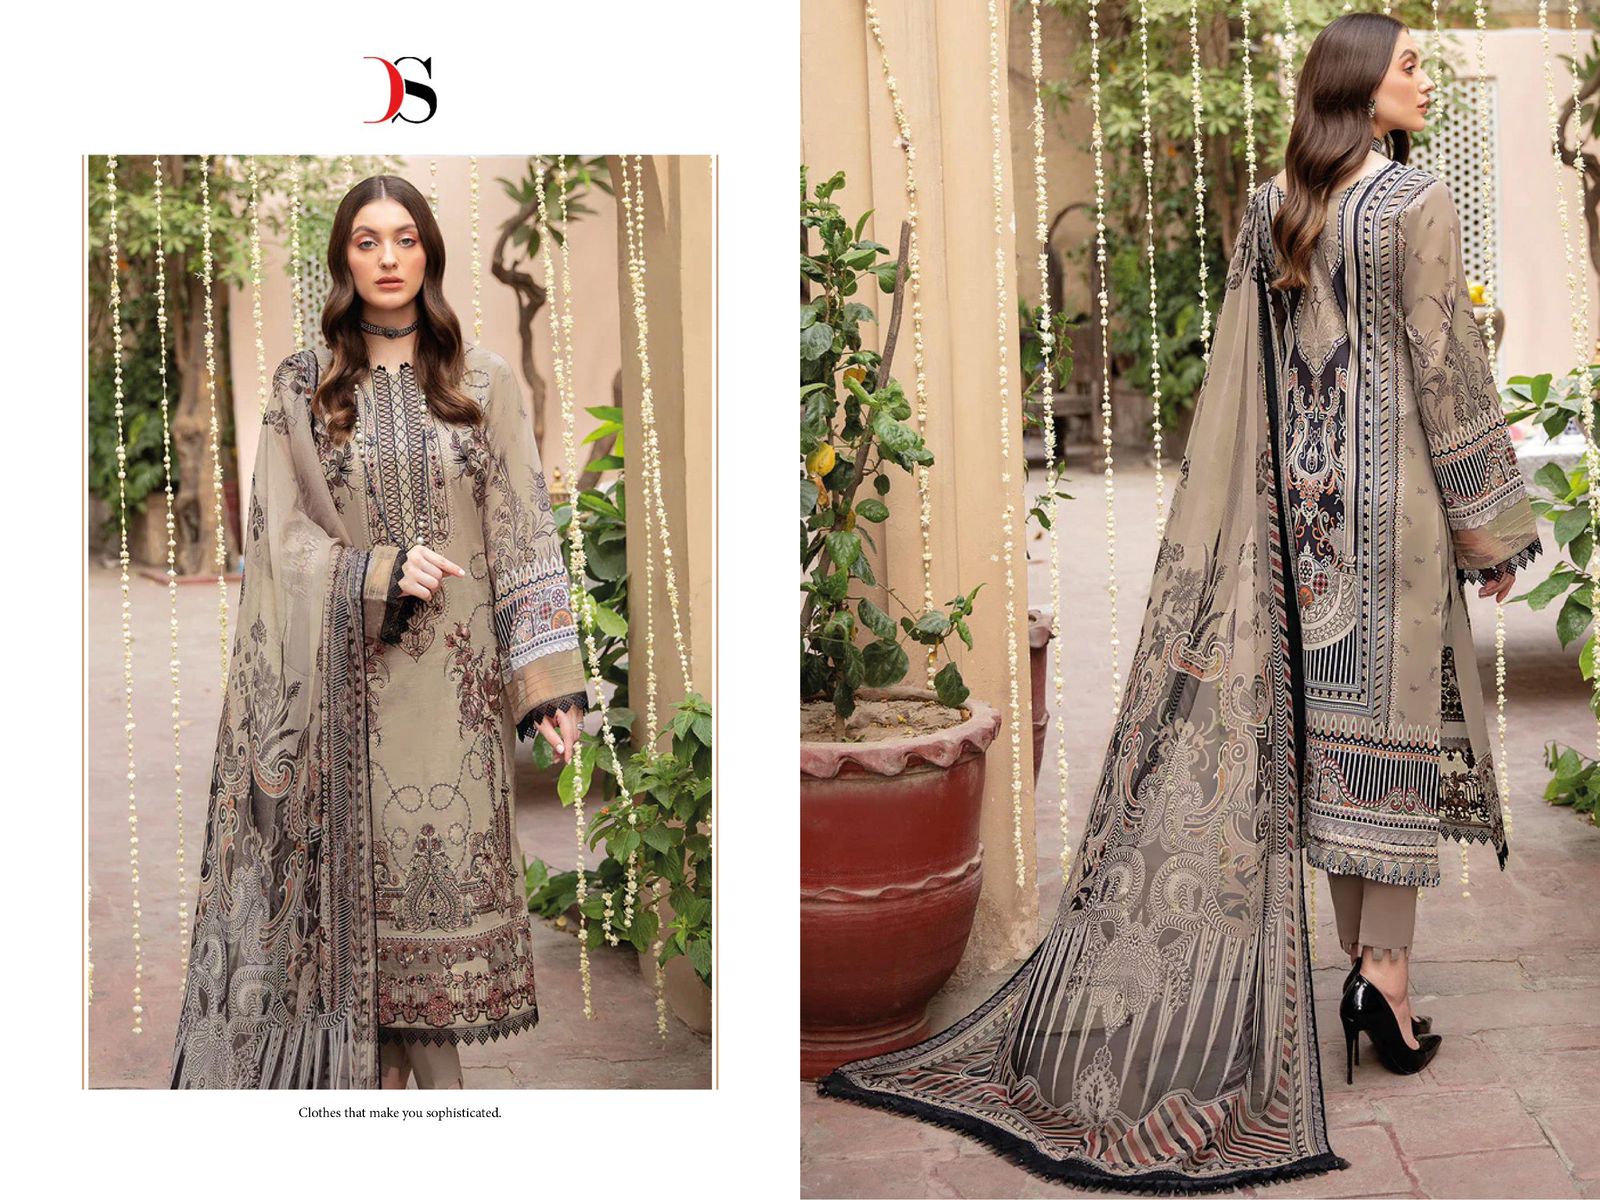 Cheveron 3 Nx Deepsy Cotton Pakistani Patch Work Suits